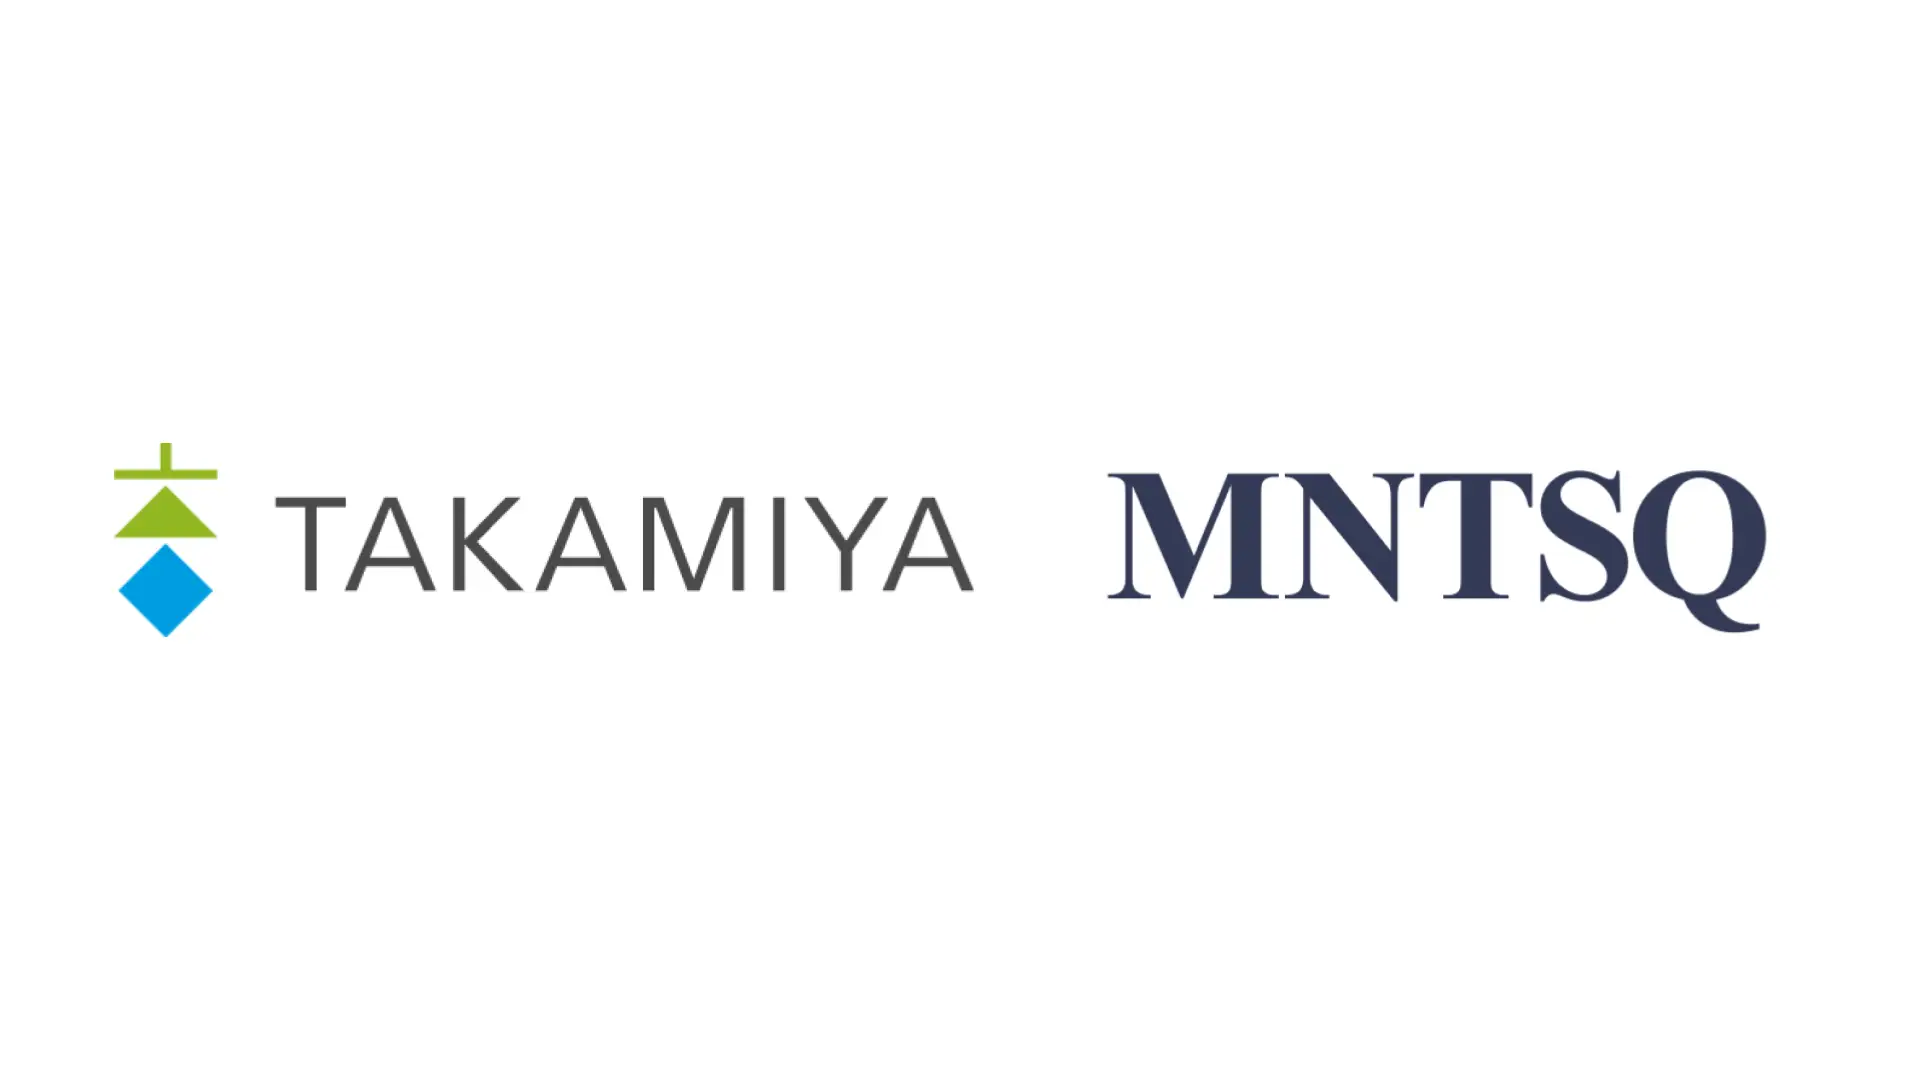 タカミヤ、リーガルオペレーションのDXに向けた基幹システムとして「MNTSQ CLM」を採用